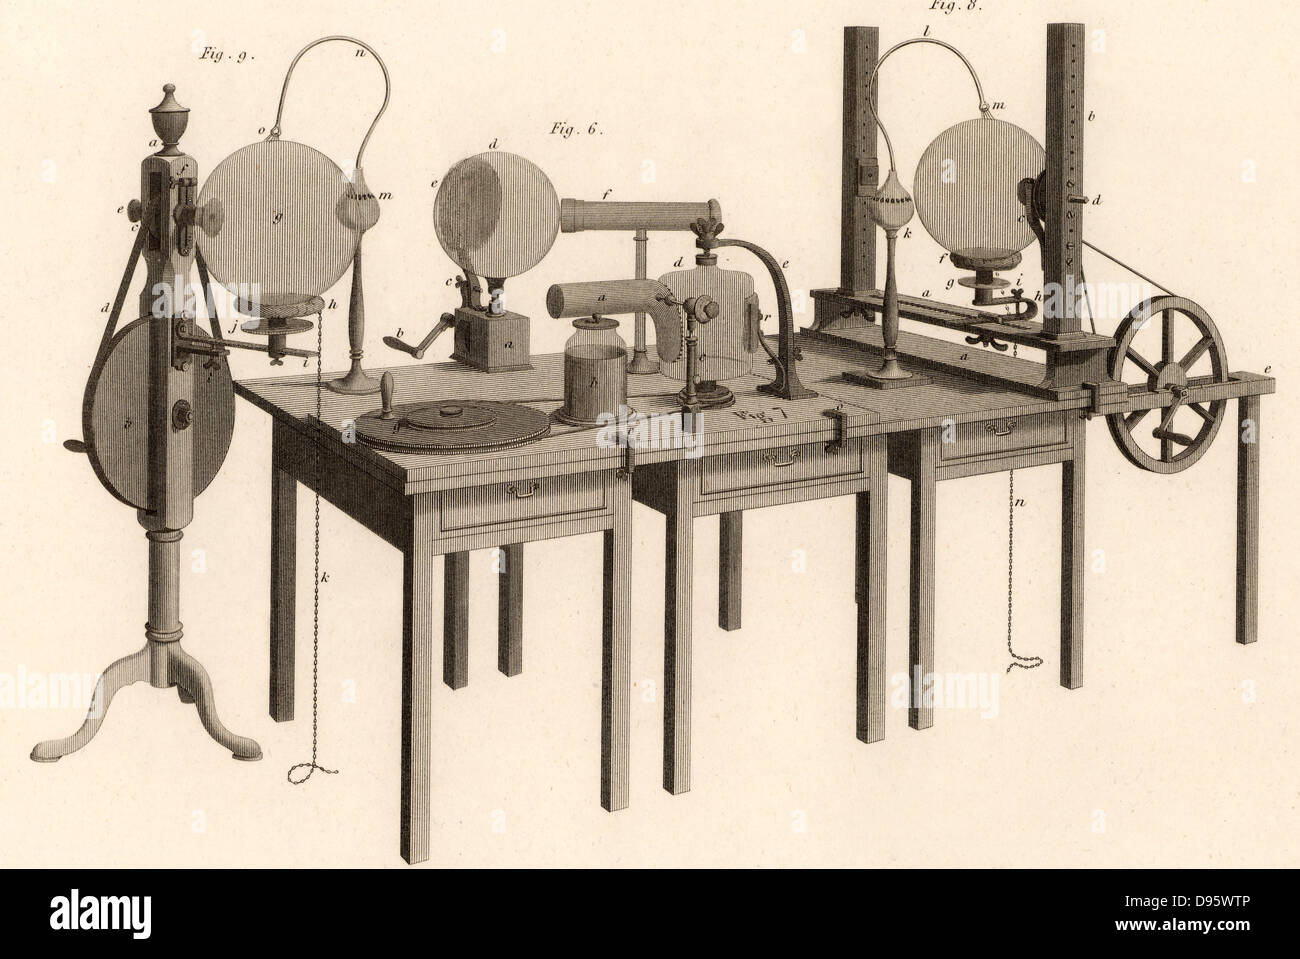 Macchina elettrostatica usata per i suoi esperimenti da Joseph Priestley (1733-1804) farmacia inglese, nonconformista pastore e maestro. Uno degli scopritori di ossigeno. Incisione da 'encyclopaedia - Wikizionario' da Abramo Rees (Londra, 1820). Foto Stock